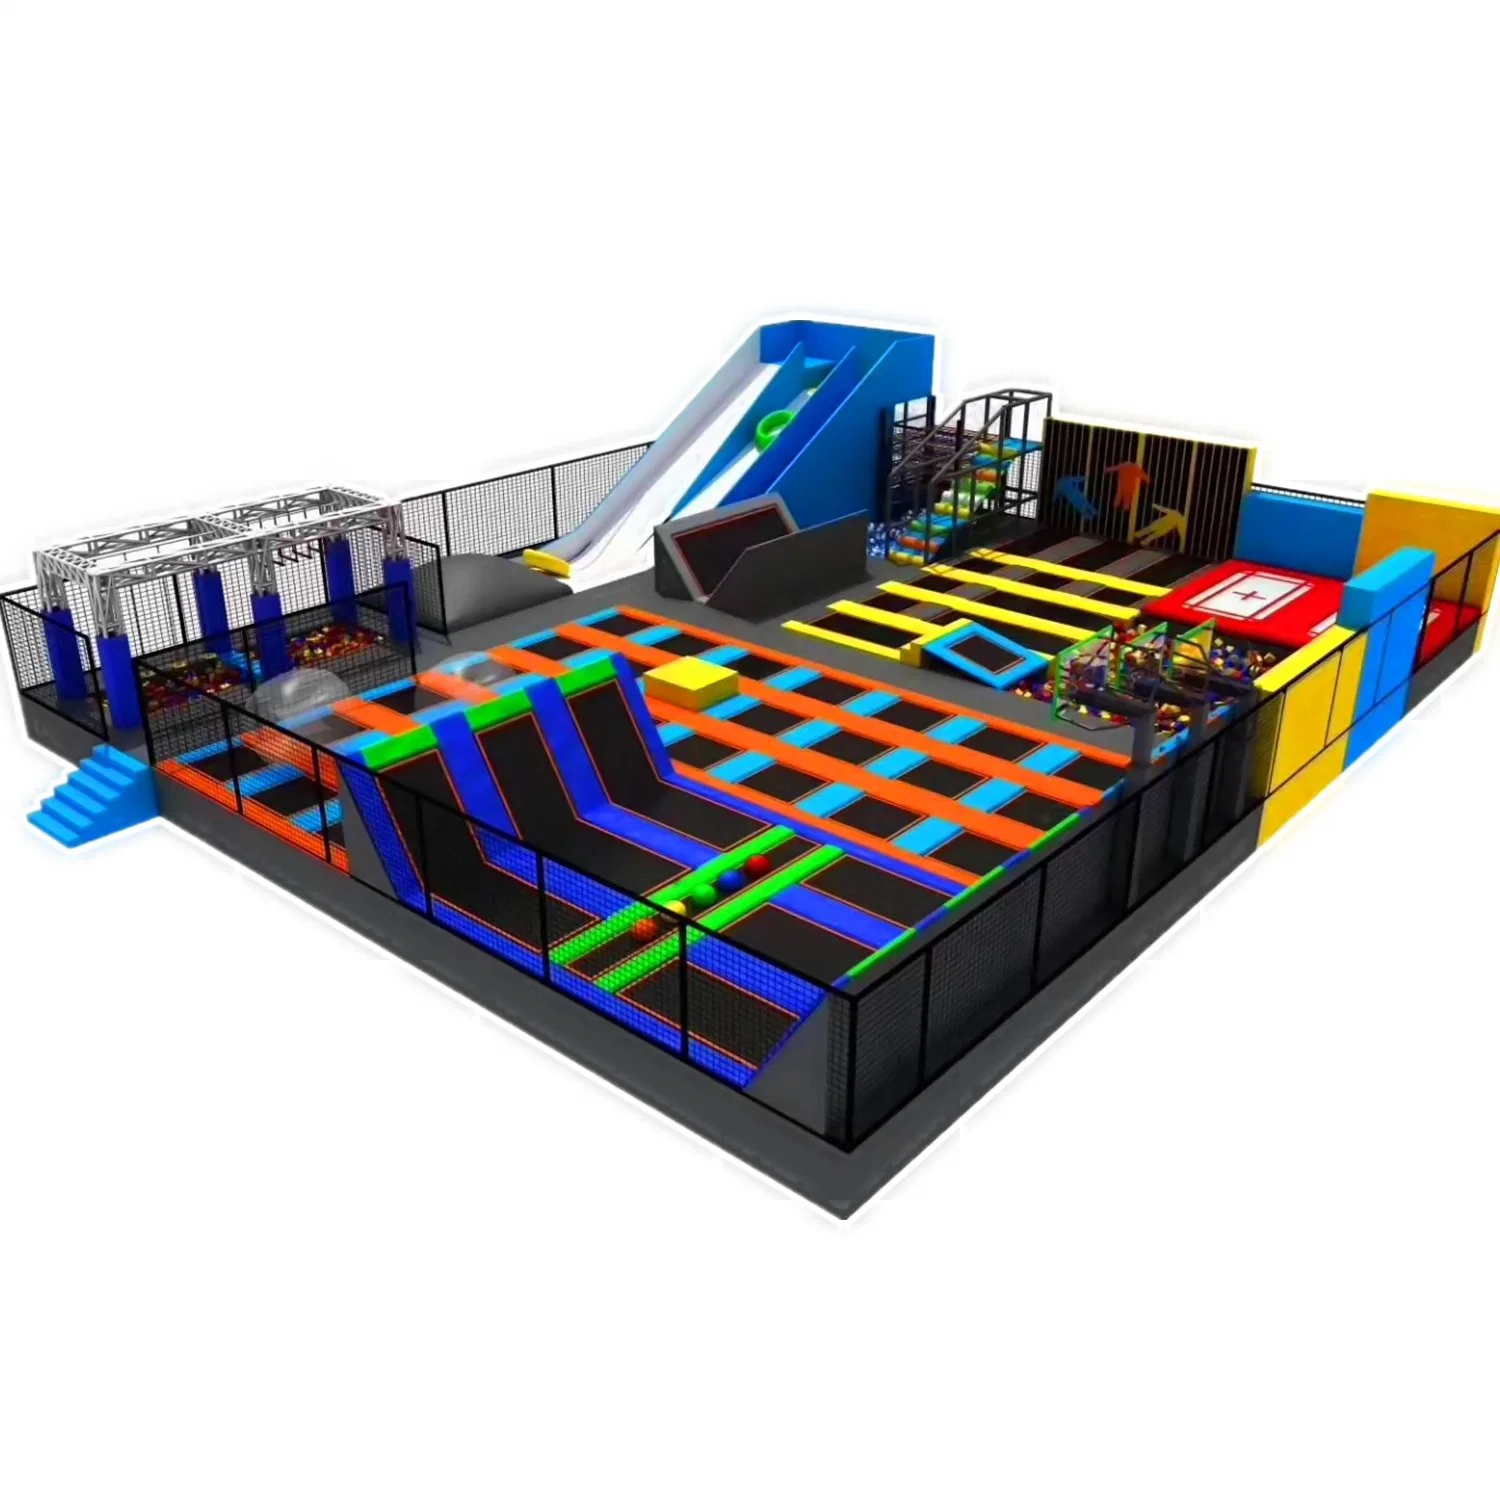 Kinder Erwachsenen Vergnügungspark Trampolin Park Indoor Spielplatz Ausrüstung